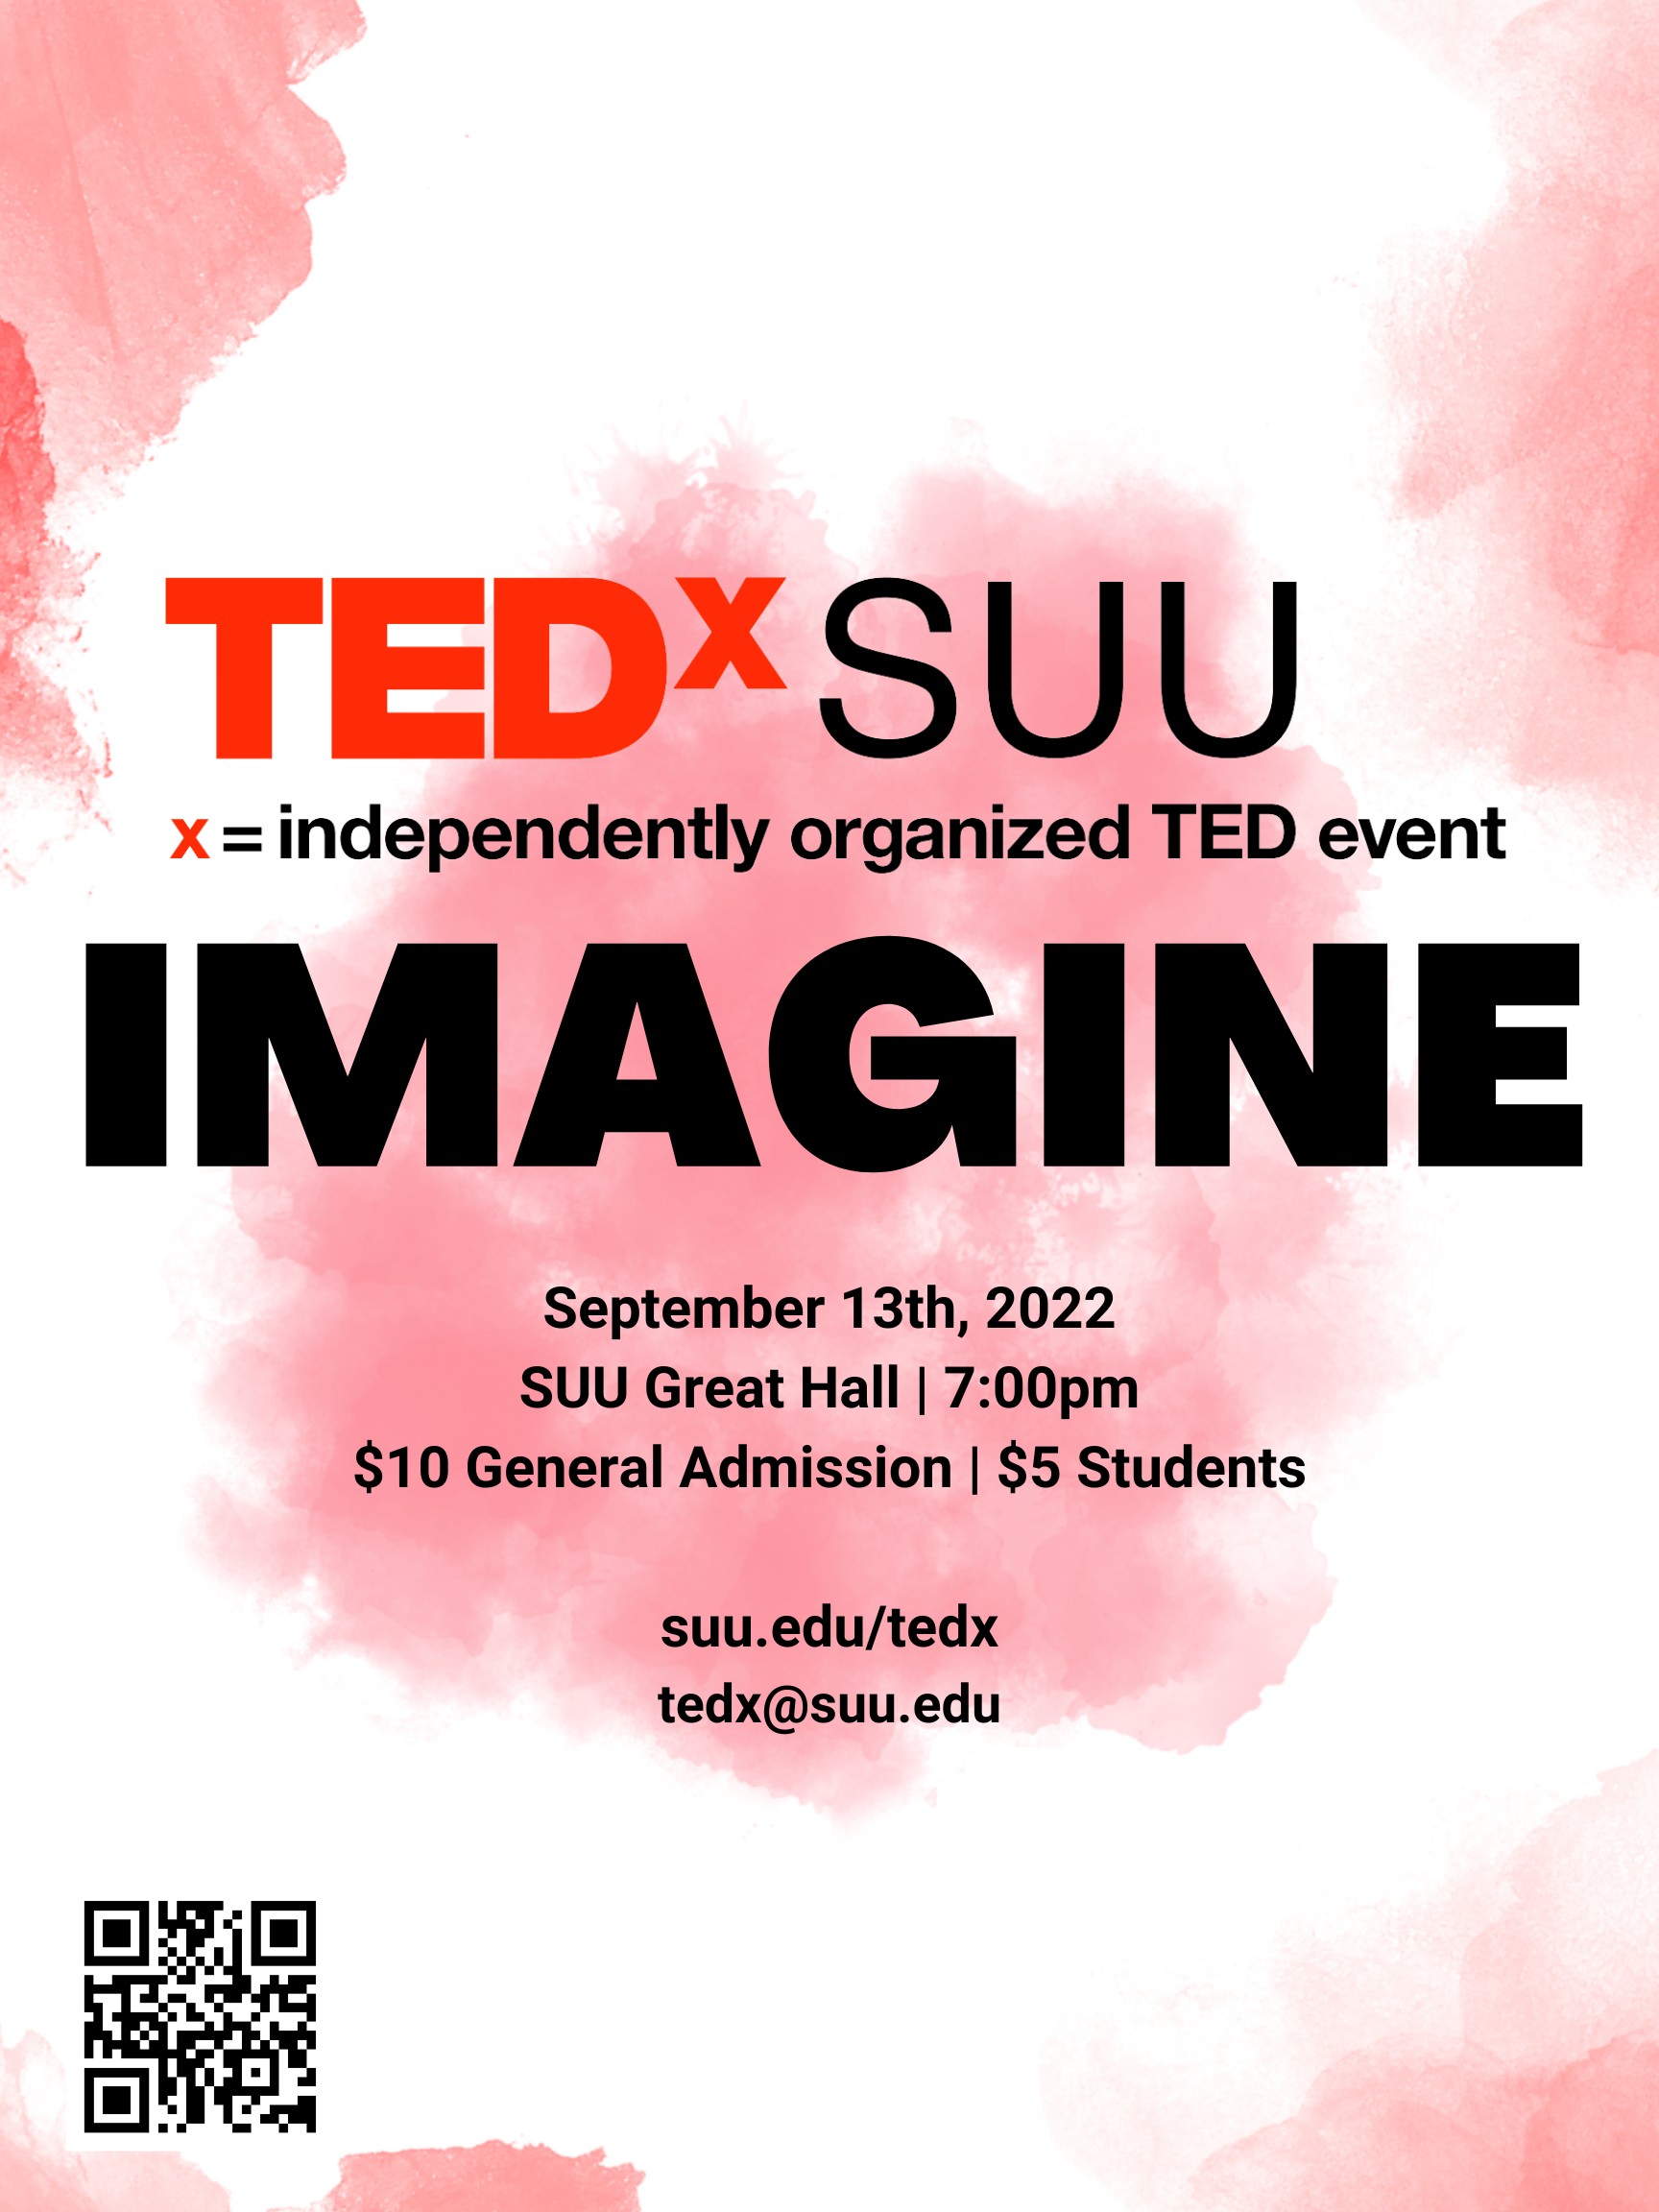 TedxSUU 2022 Poster Imagine September 13th, 2022 SUU Great Hall 7:00PM $10 General Admission $5 Students suu.edu/tedx